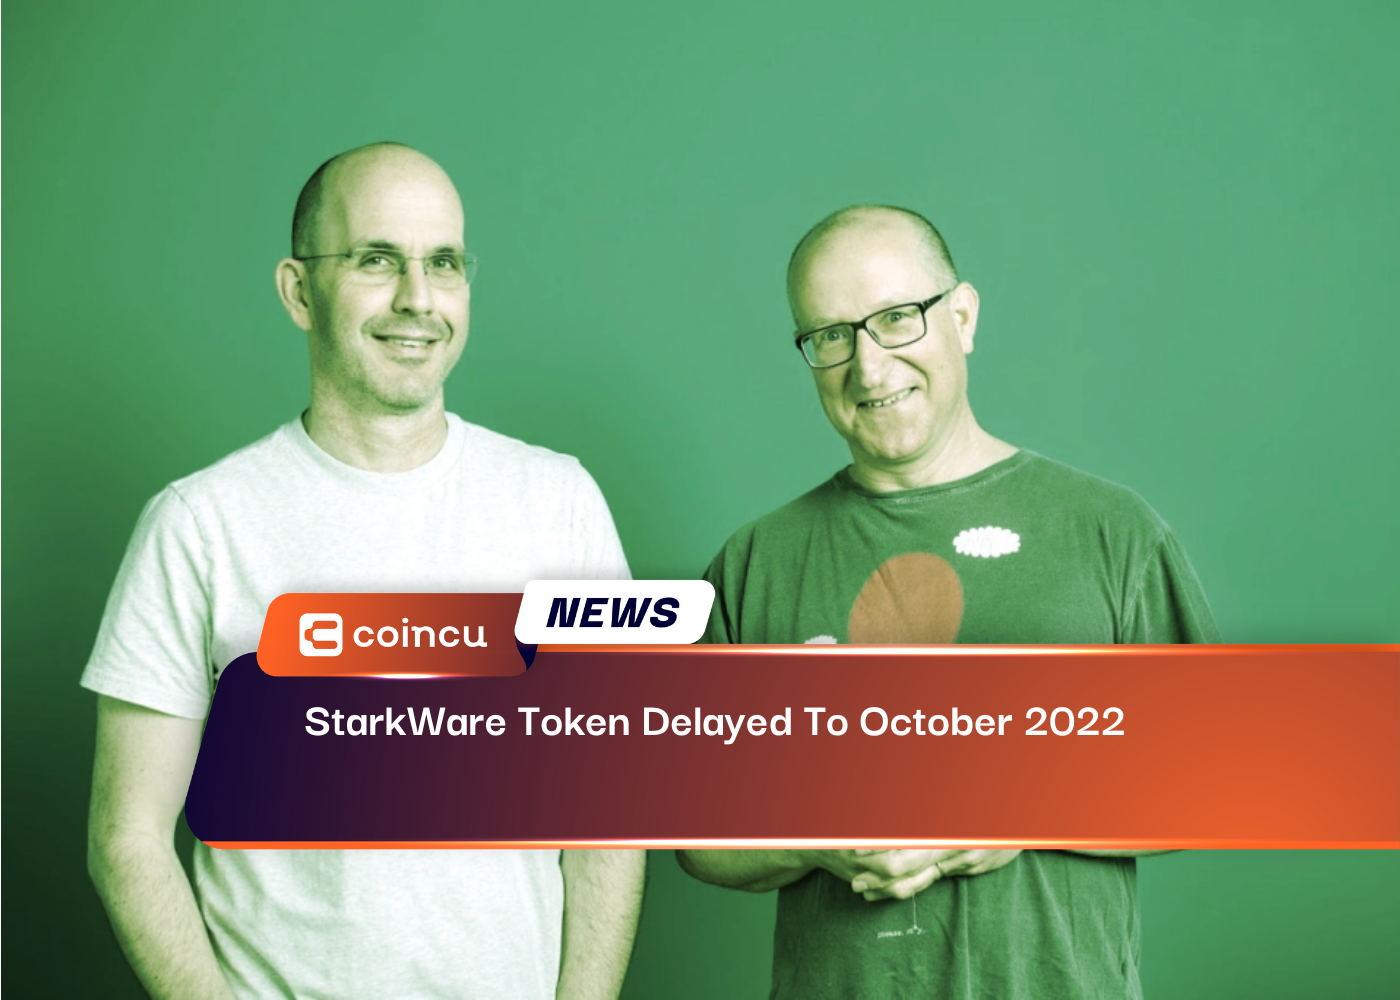 Mã thông báo StarkWare bị trì hoãn đến tháng 2022 năm XNUMX